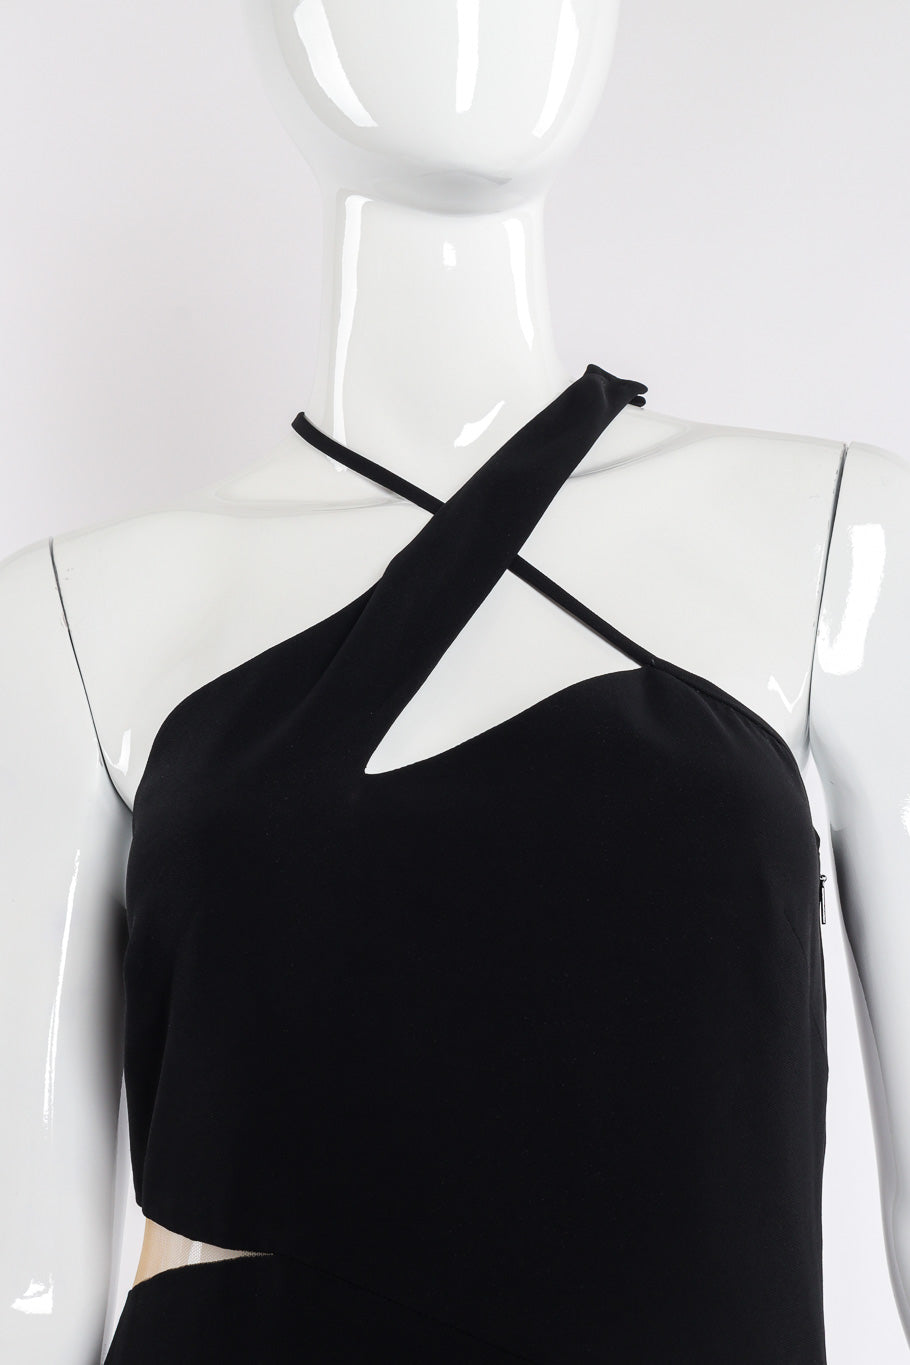 Versace Asymmetric Cut-Out Dress crossover straps front view closeup @Recessla